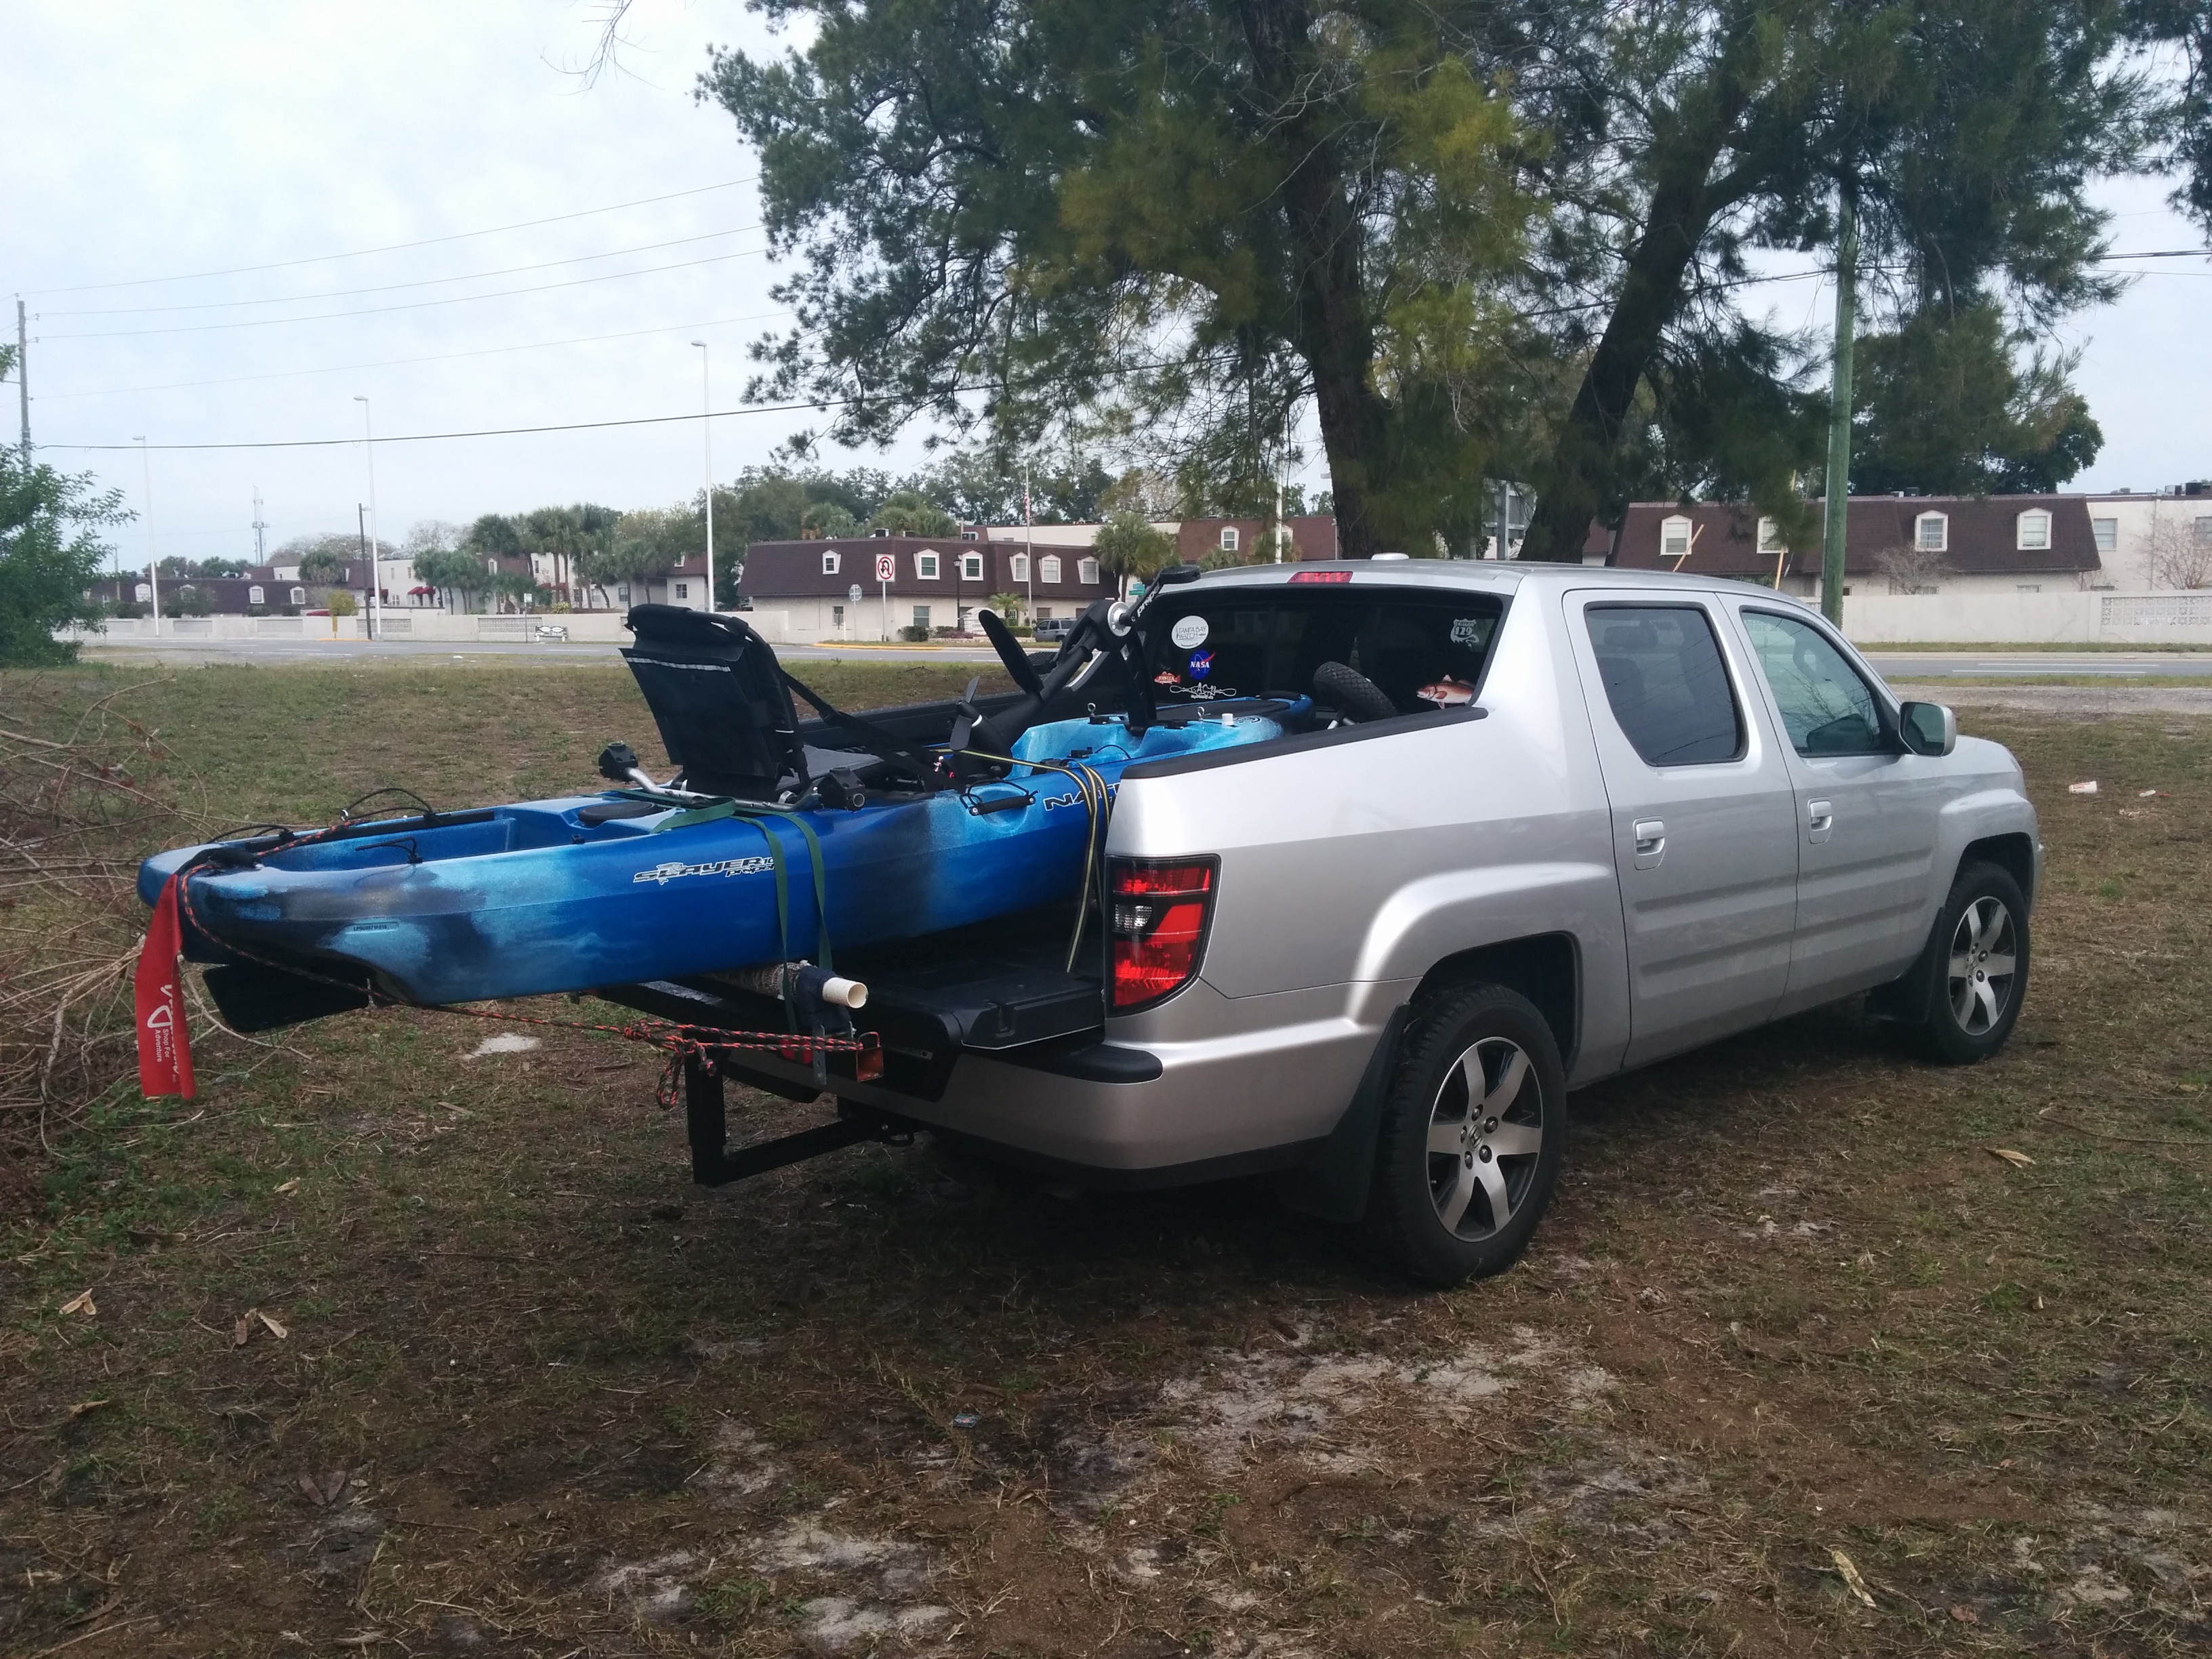 Choosing a fishing kayak